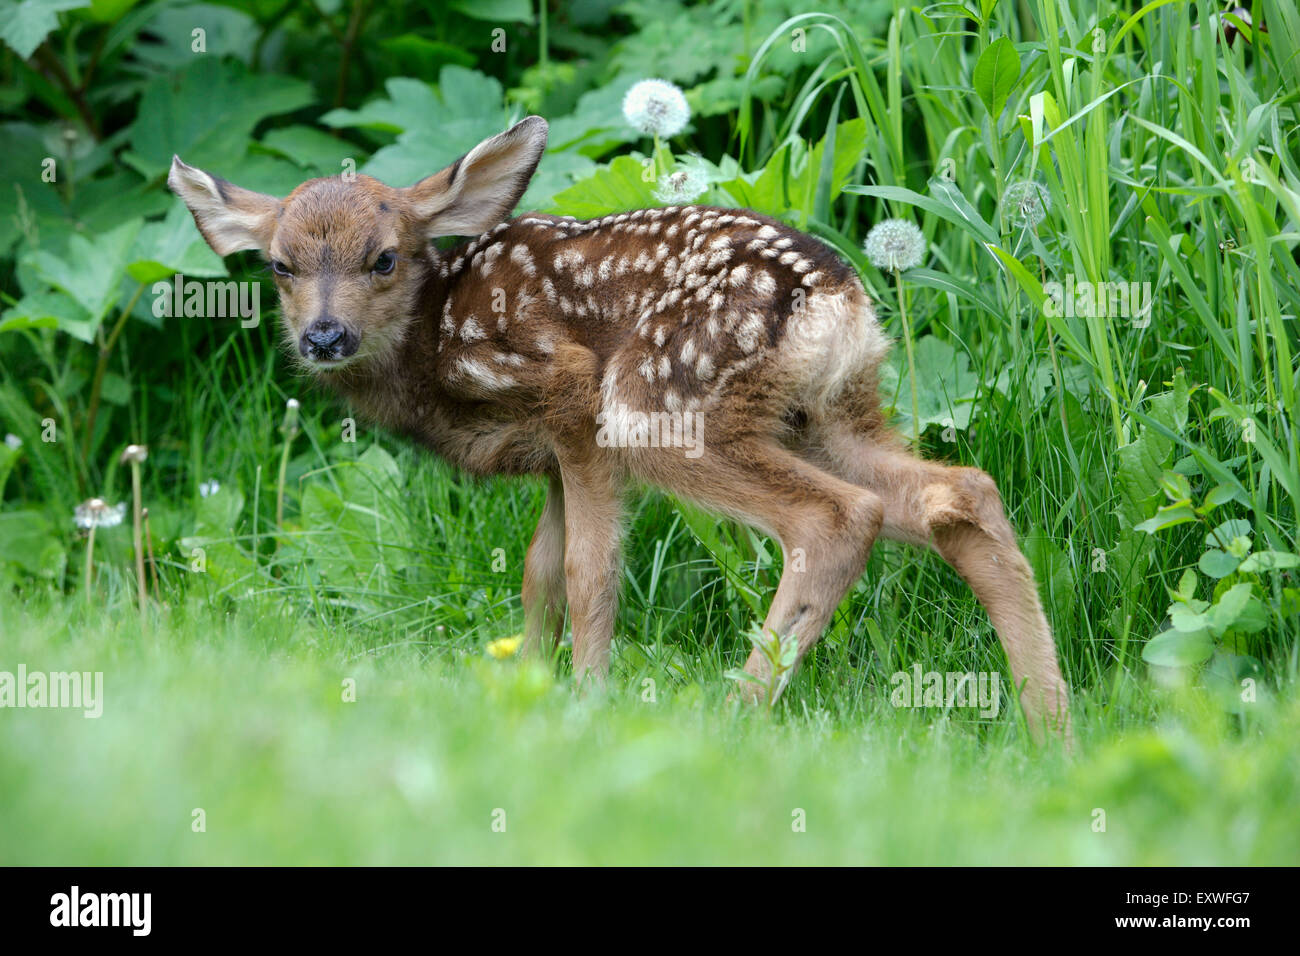 Le cerf mulet, le cerf à queue noire ou faon nouveau-né debout dans l'herbe Banque D'Images